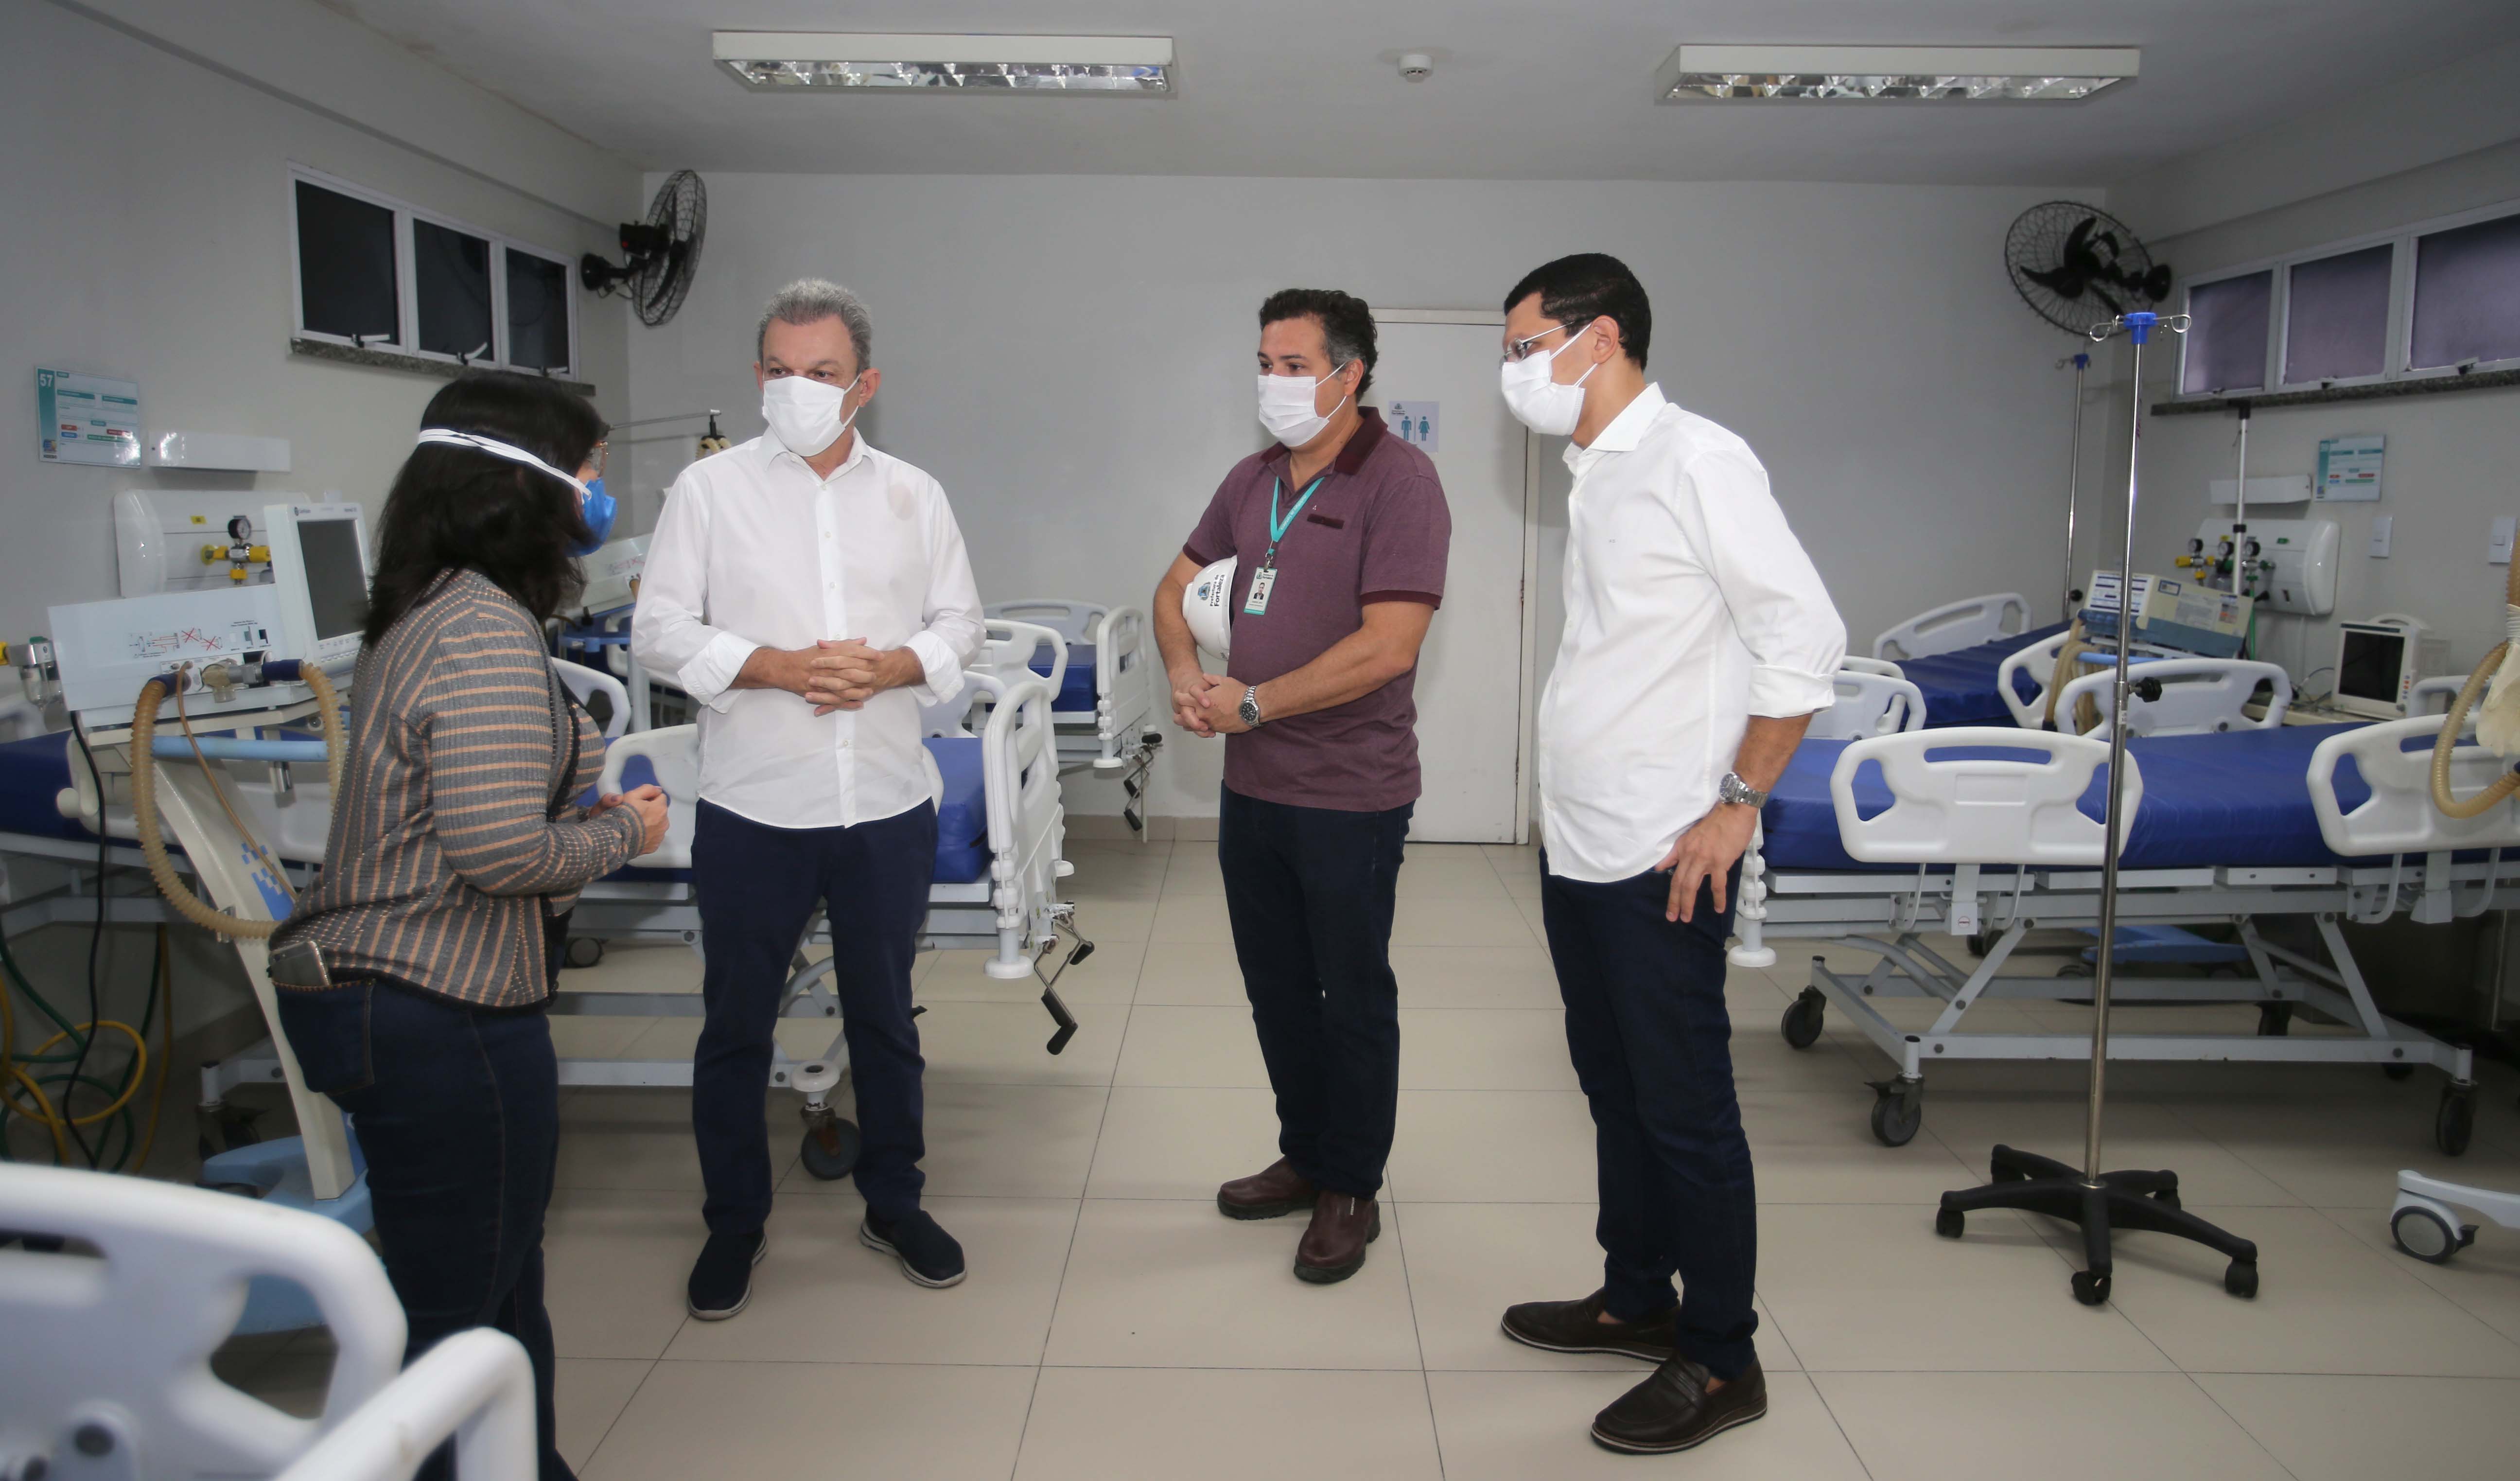 quatro pessoas com máscara convesam dentro de uma enfermaria de hospital que está sem pacientes